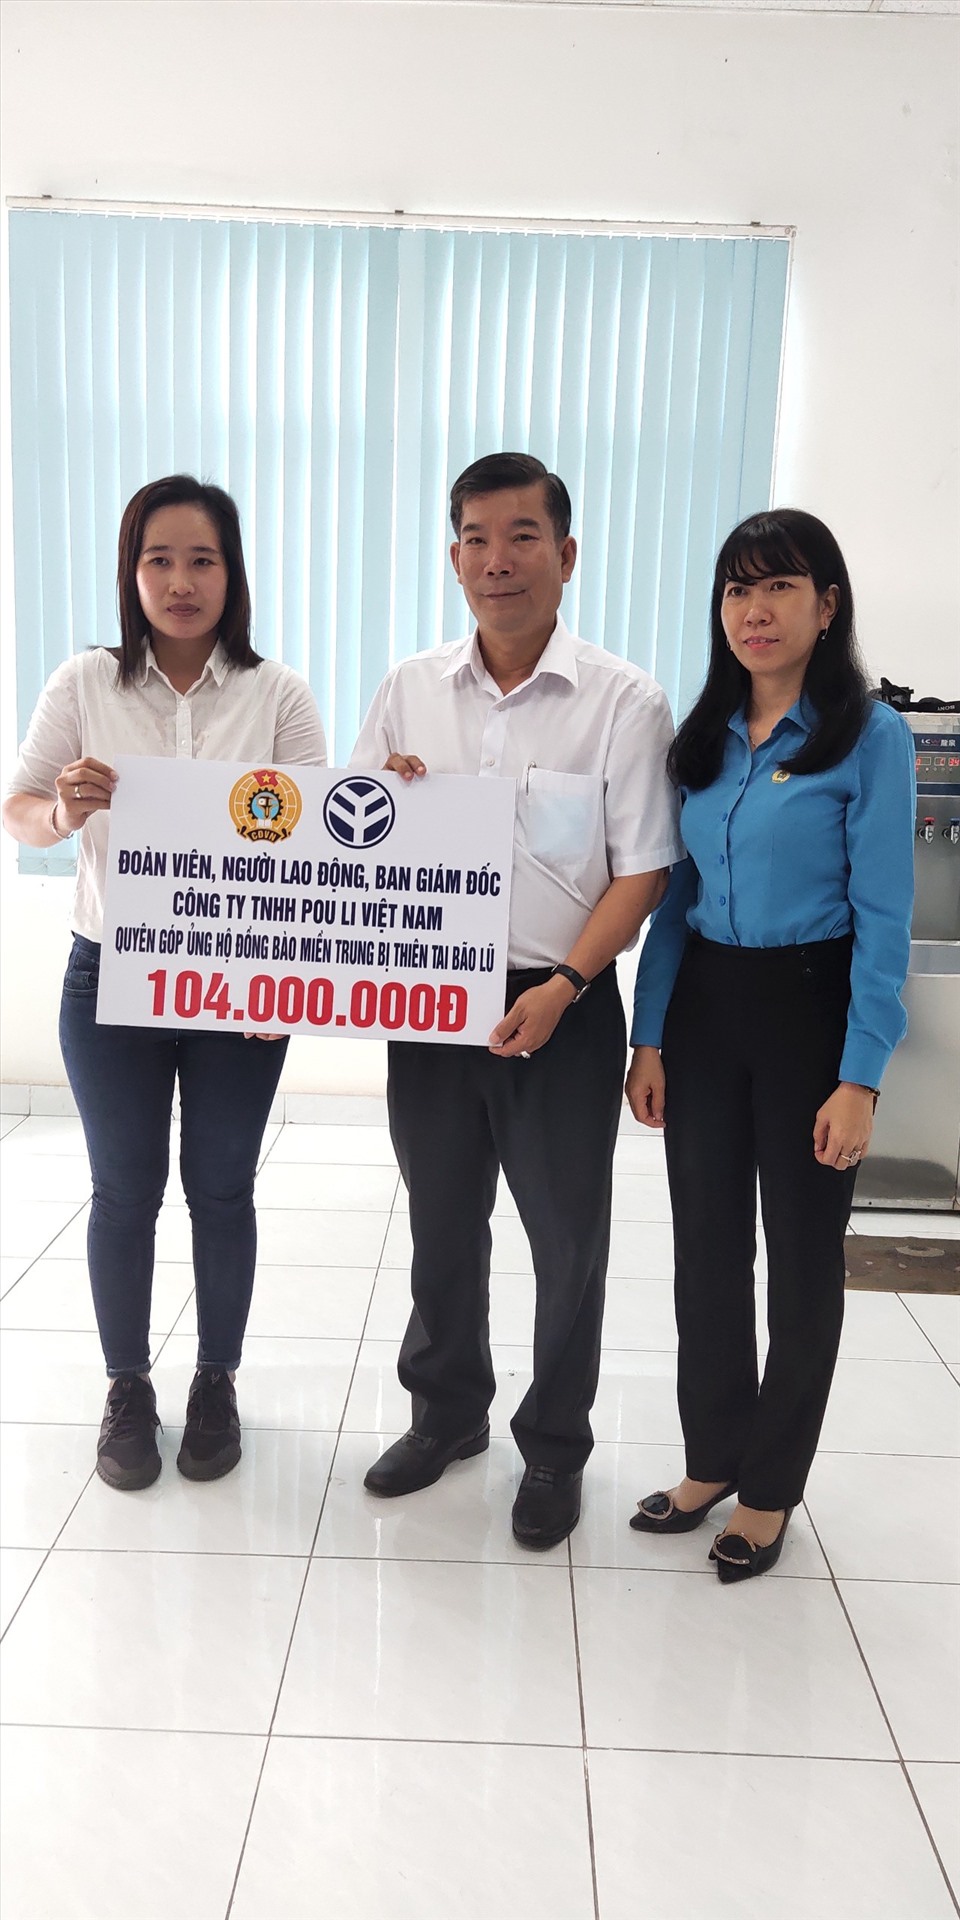 Tiêp nhận tiền ủng hộ của doanh nghiệp Công ty TNHH Pou Li VN.